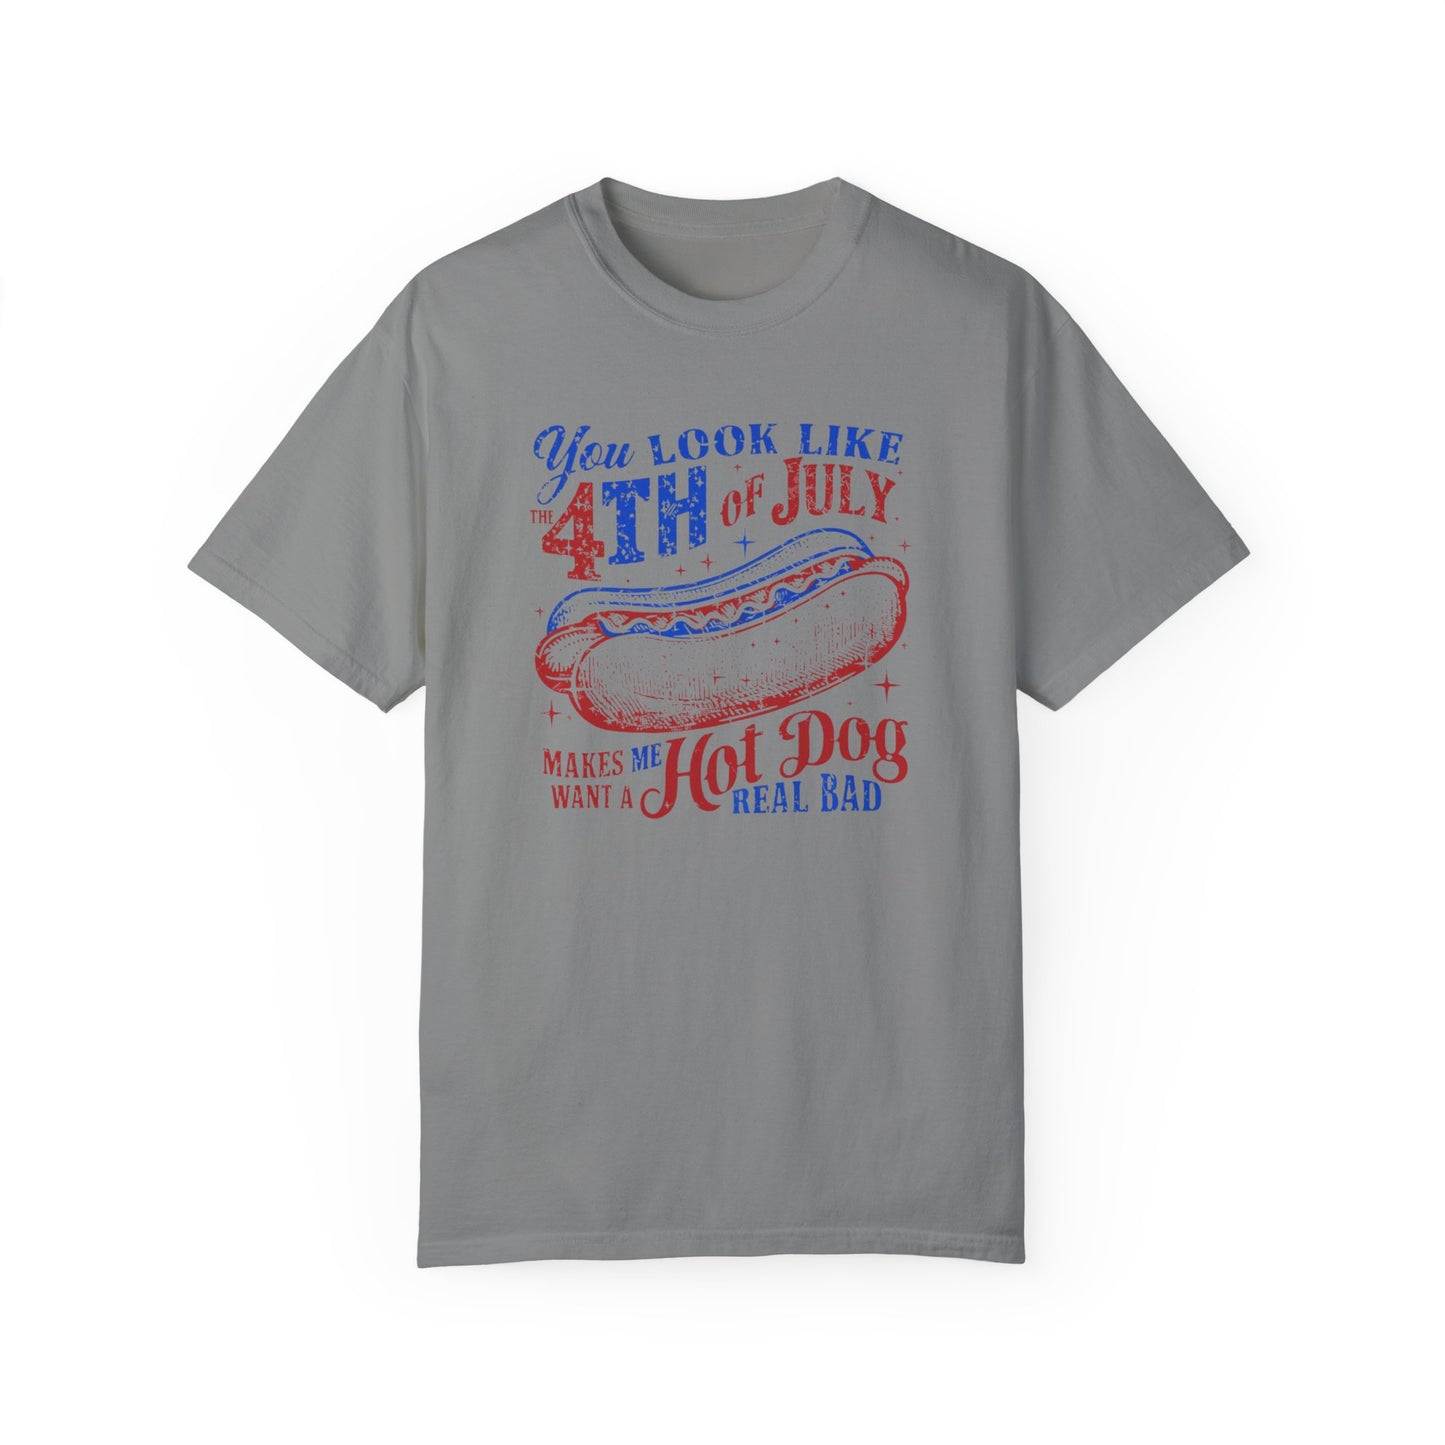 Fourth of July Tshirt